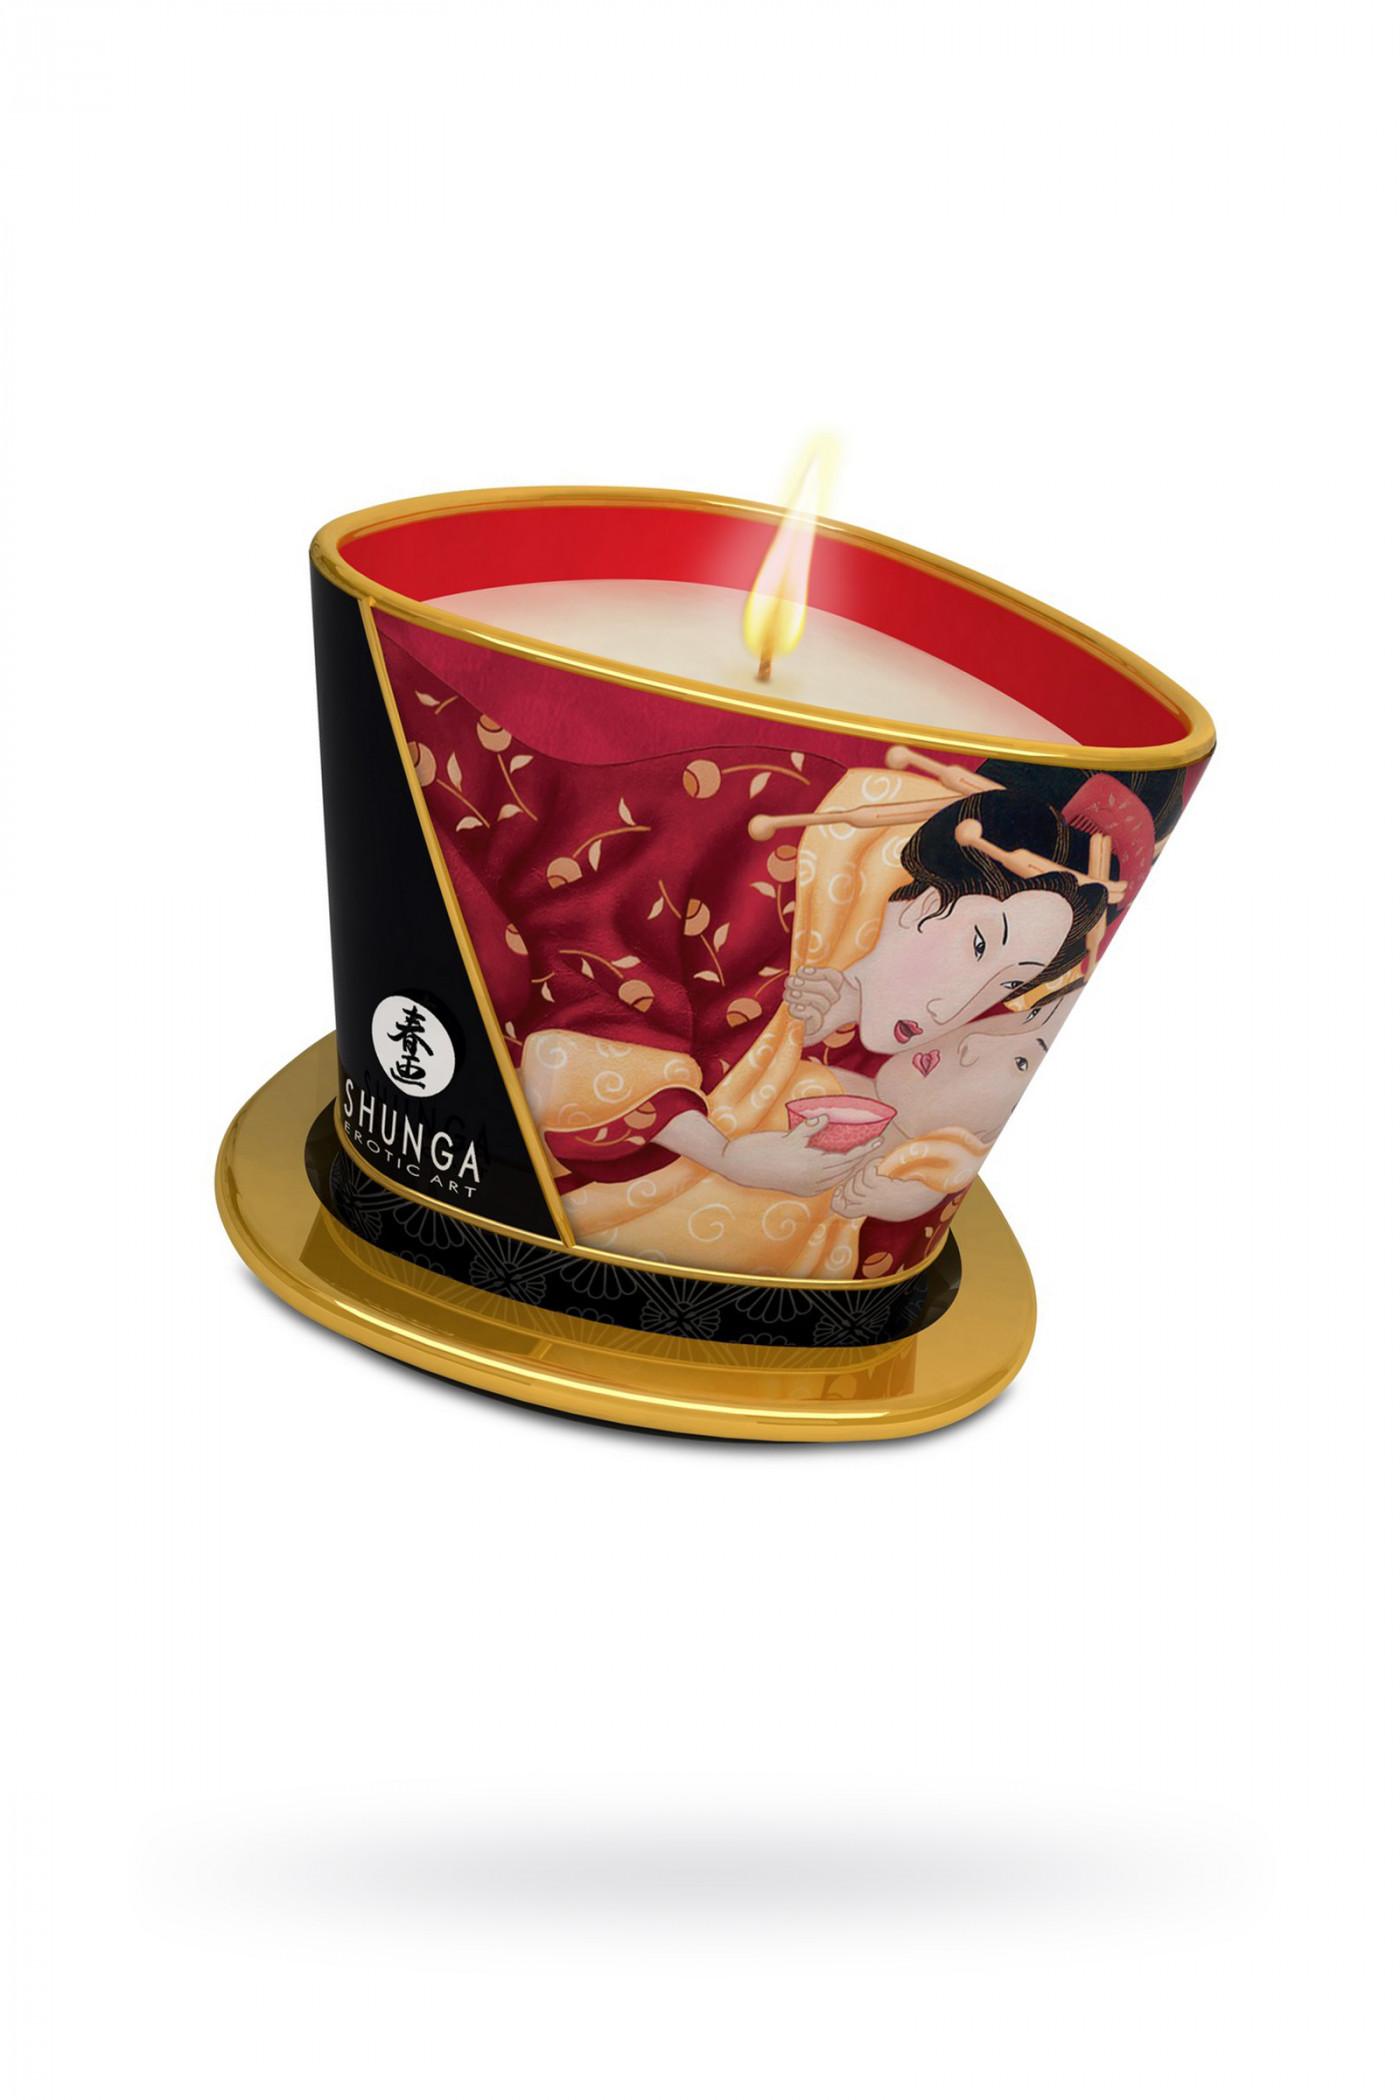 Ароматизированная свеча и масло для массажа  Shunga «Клубника и шампанское», 170 мл Vestalshop.ru - Изображение 3